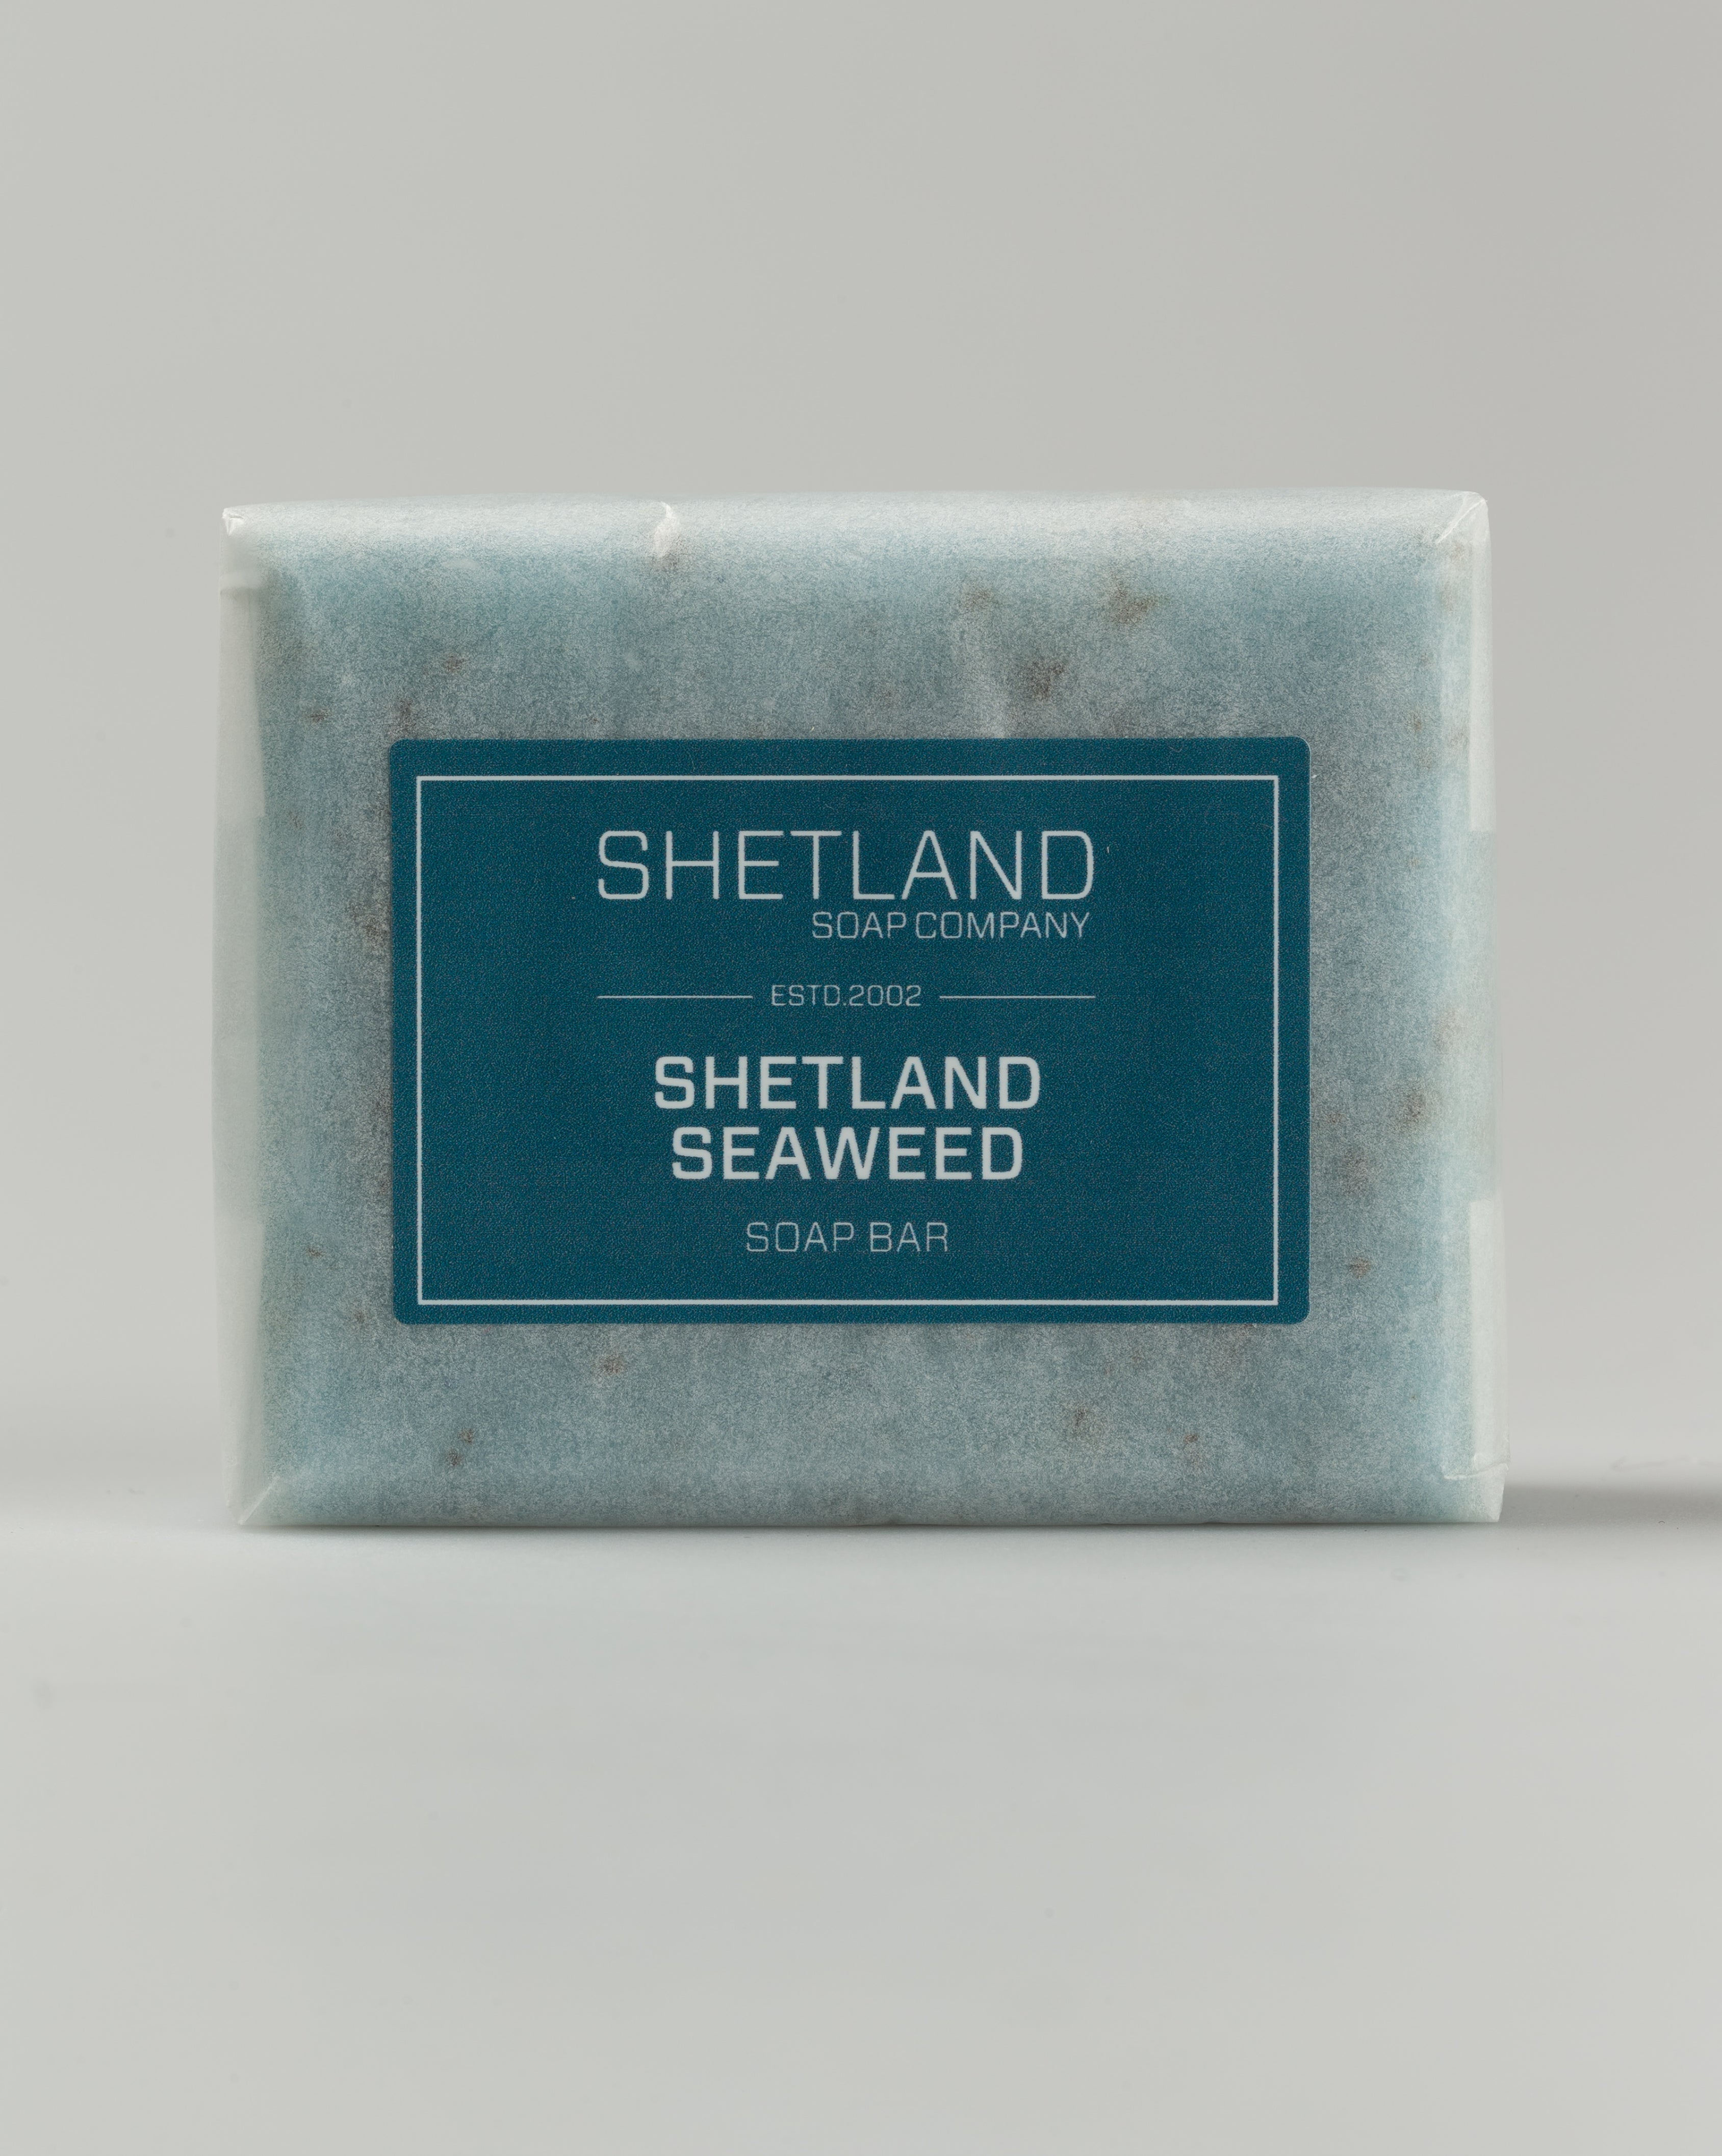 SHETLAND SEAWEED SOAP BAR